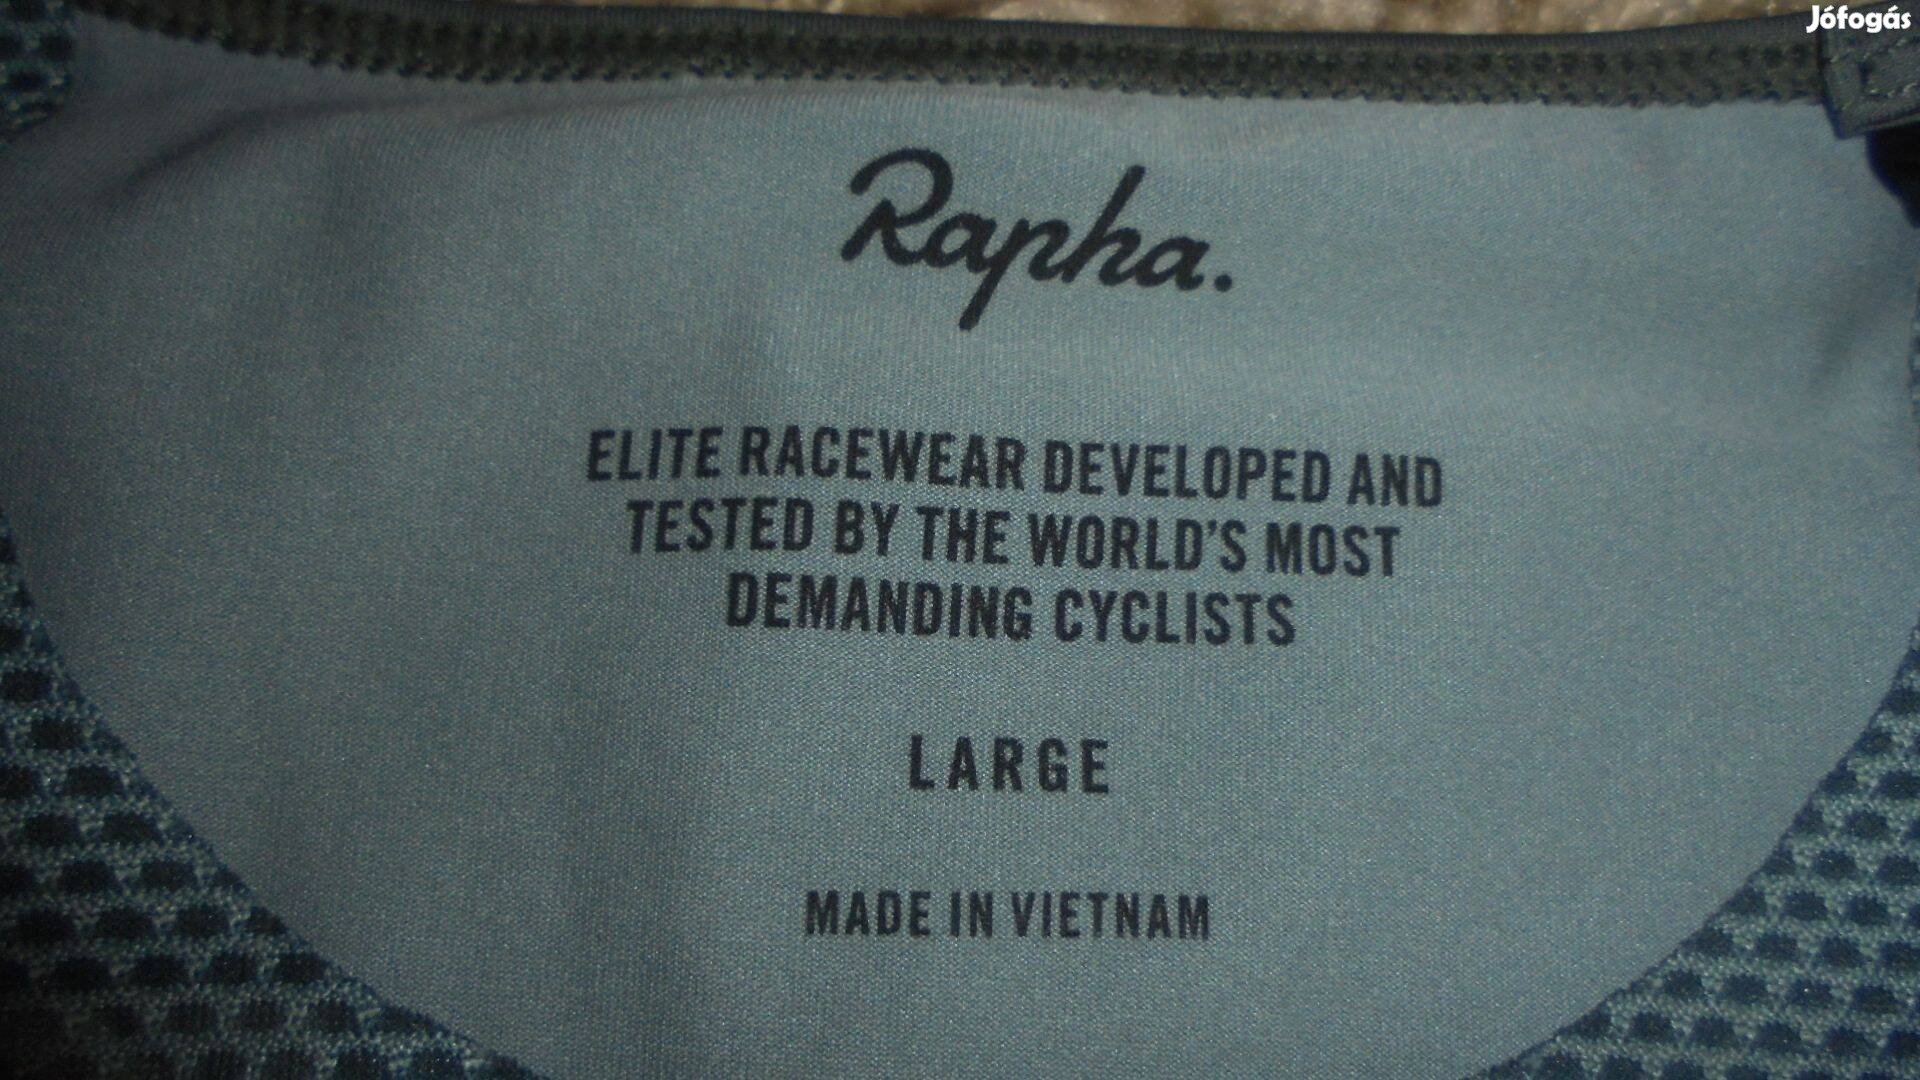 Prémium női L-s Rapha kerékpáros trikó, edzőtrikó 25eft helyett nike